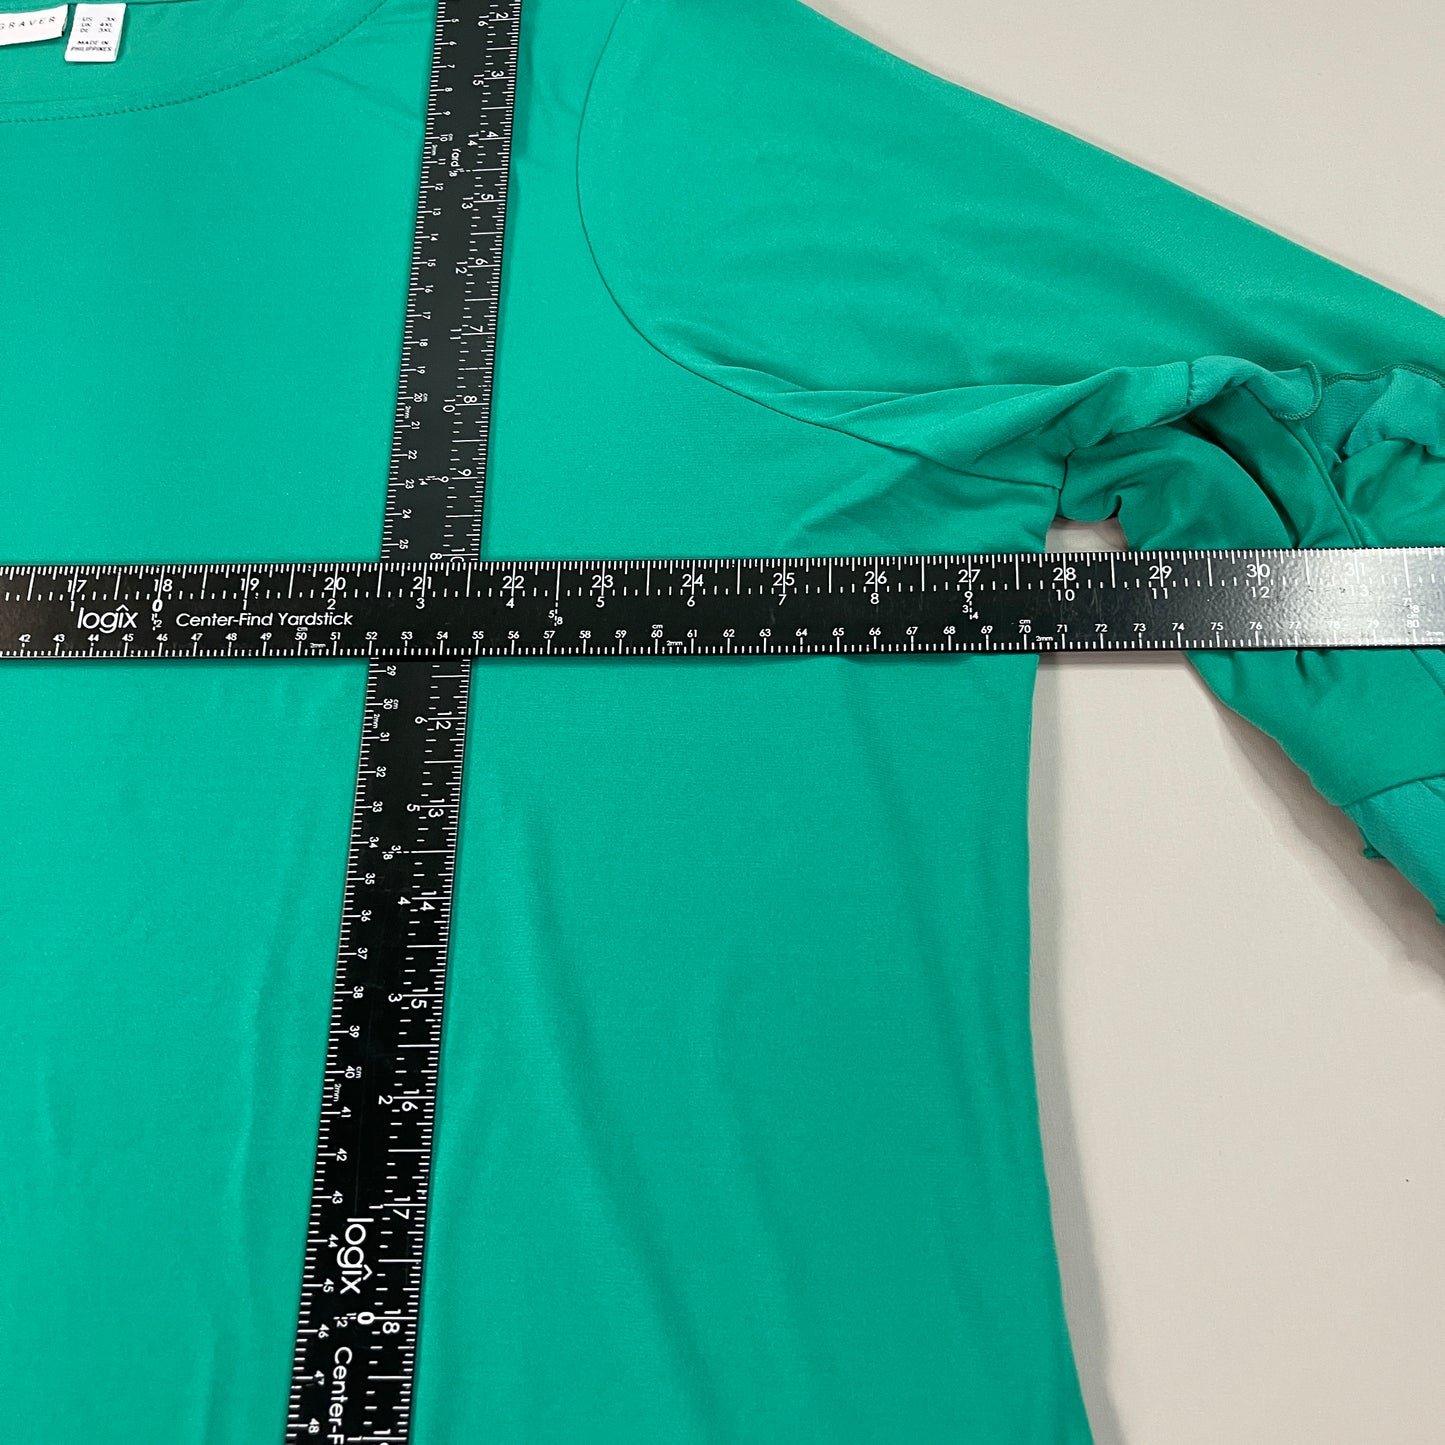 SUSAN GRAVER Liquid Knit Top W/ Sheer Chiffon Ruffles Women's Sz 3XL Jade Green (New)